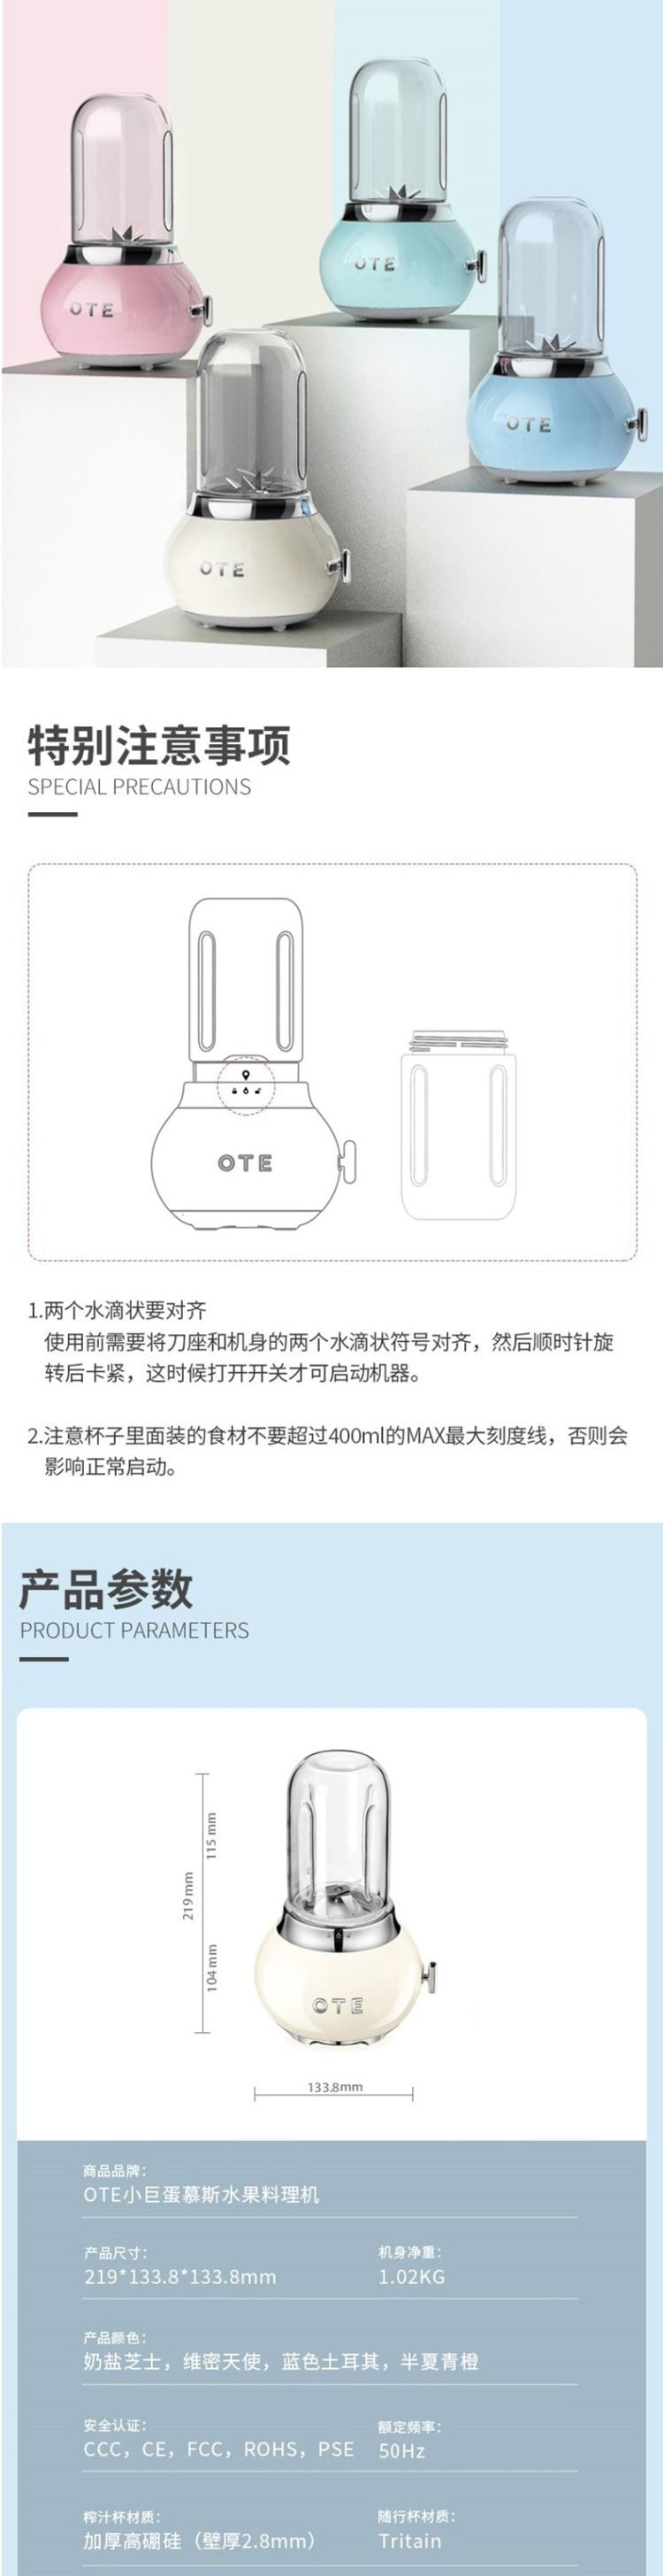 【網紅爆款】OTE歐堤小巨蛋榨汁機小型家用便攜式多功能榨汁杯果汁機 0.4L 奶白色 1件